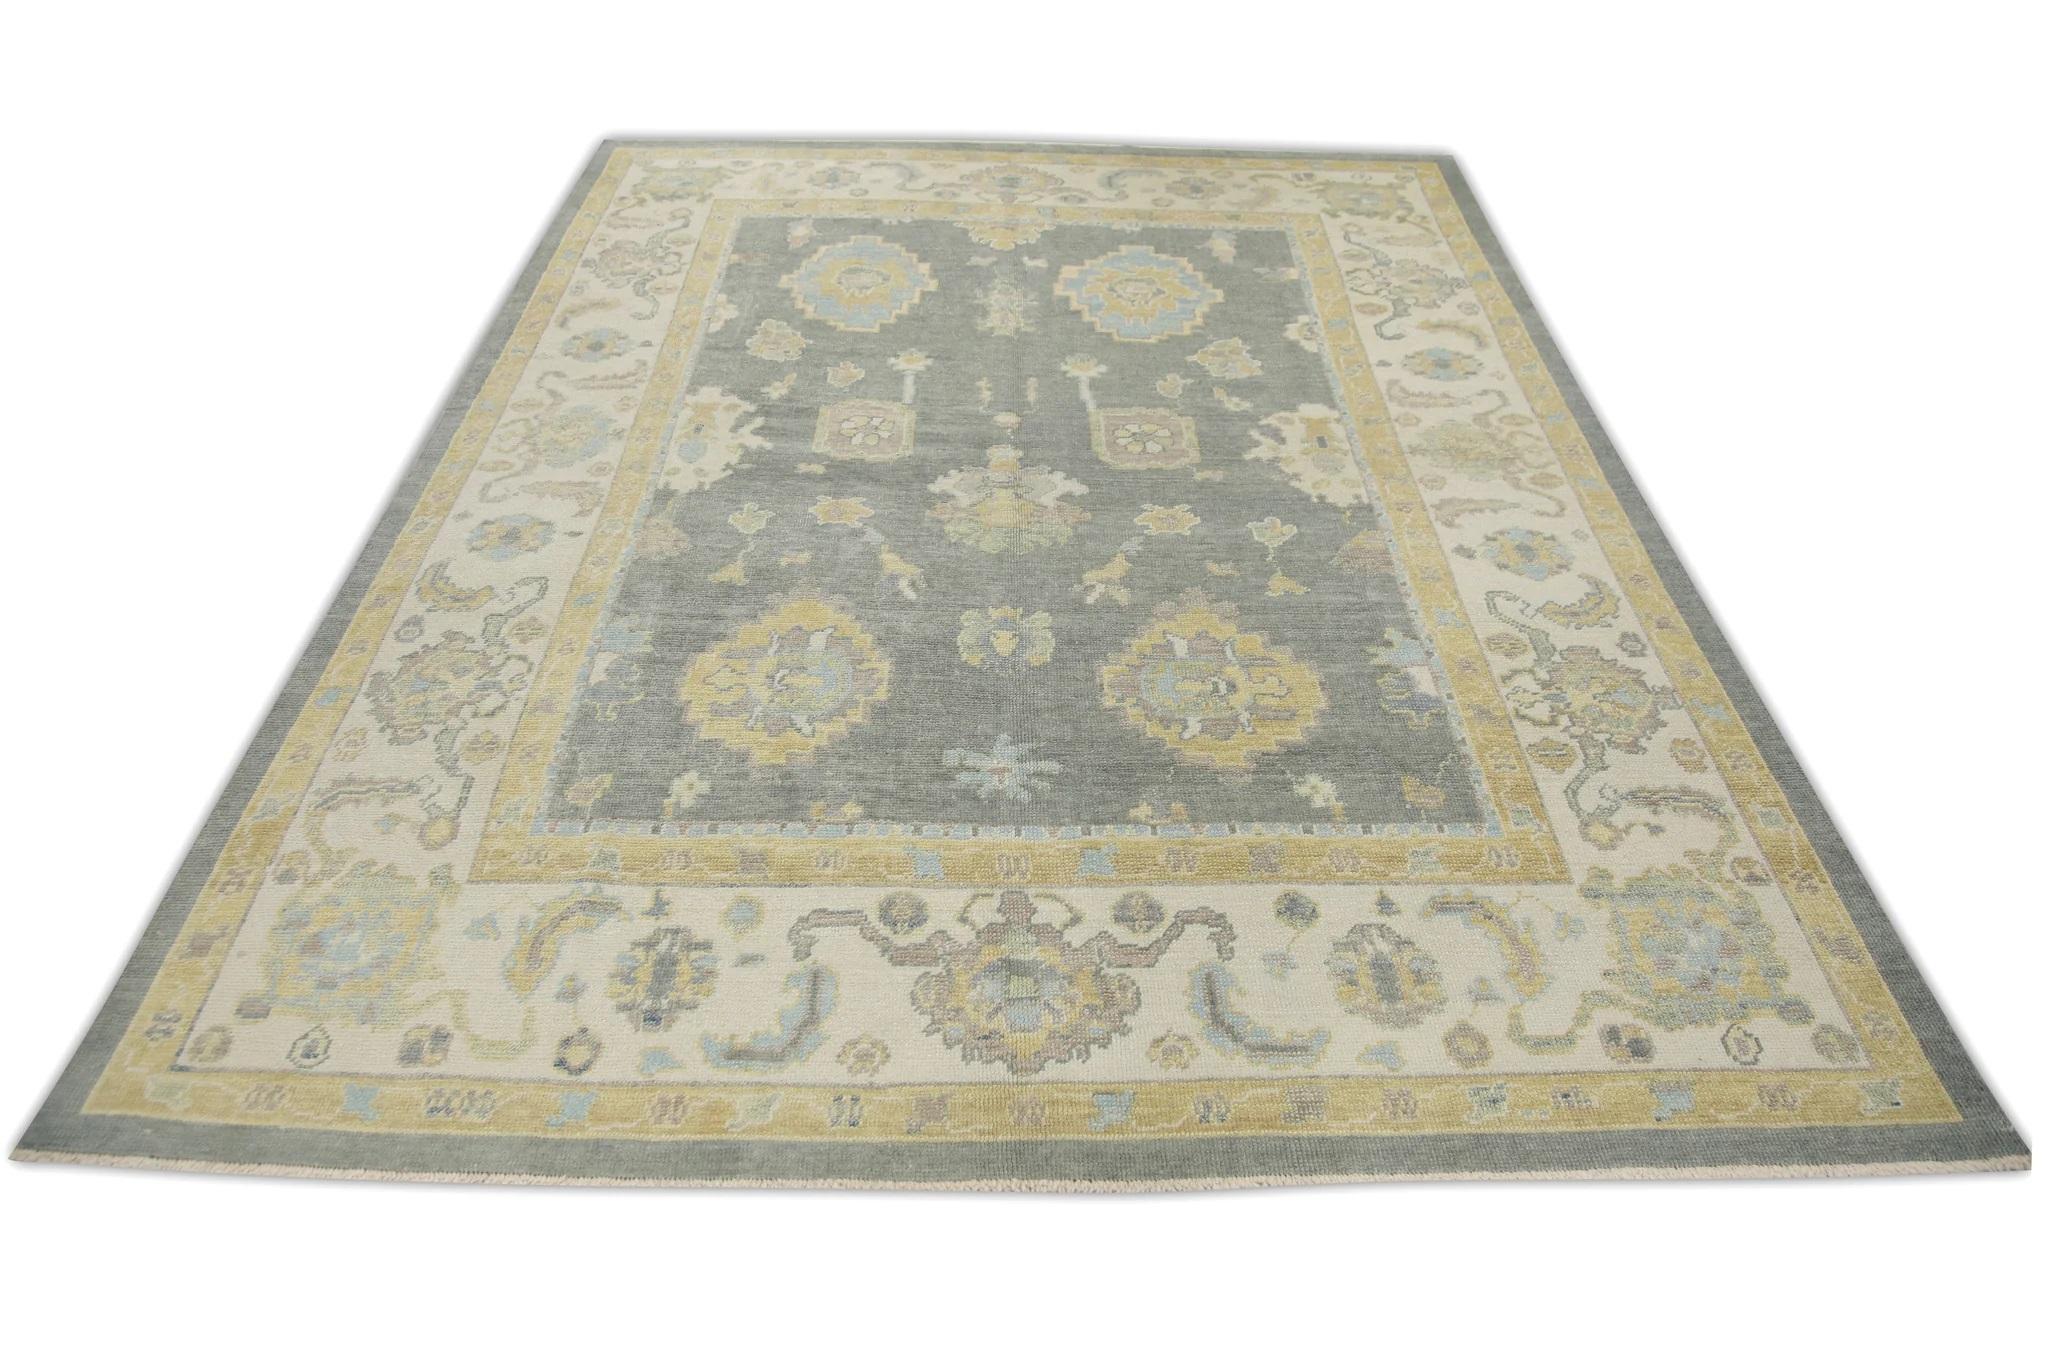 Türkischer Oushak-Teppich aus handgewebter Wolle in Grau & Gelb in floralem Design 7'11